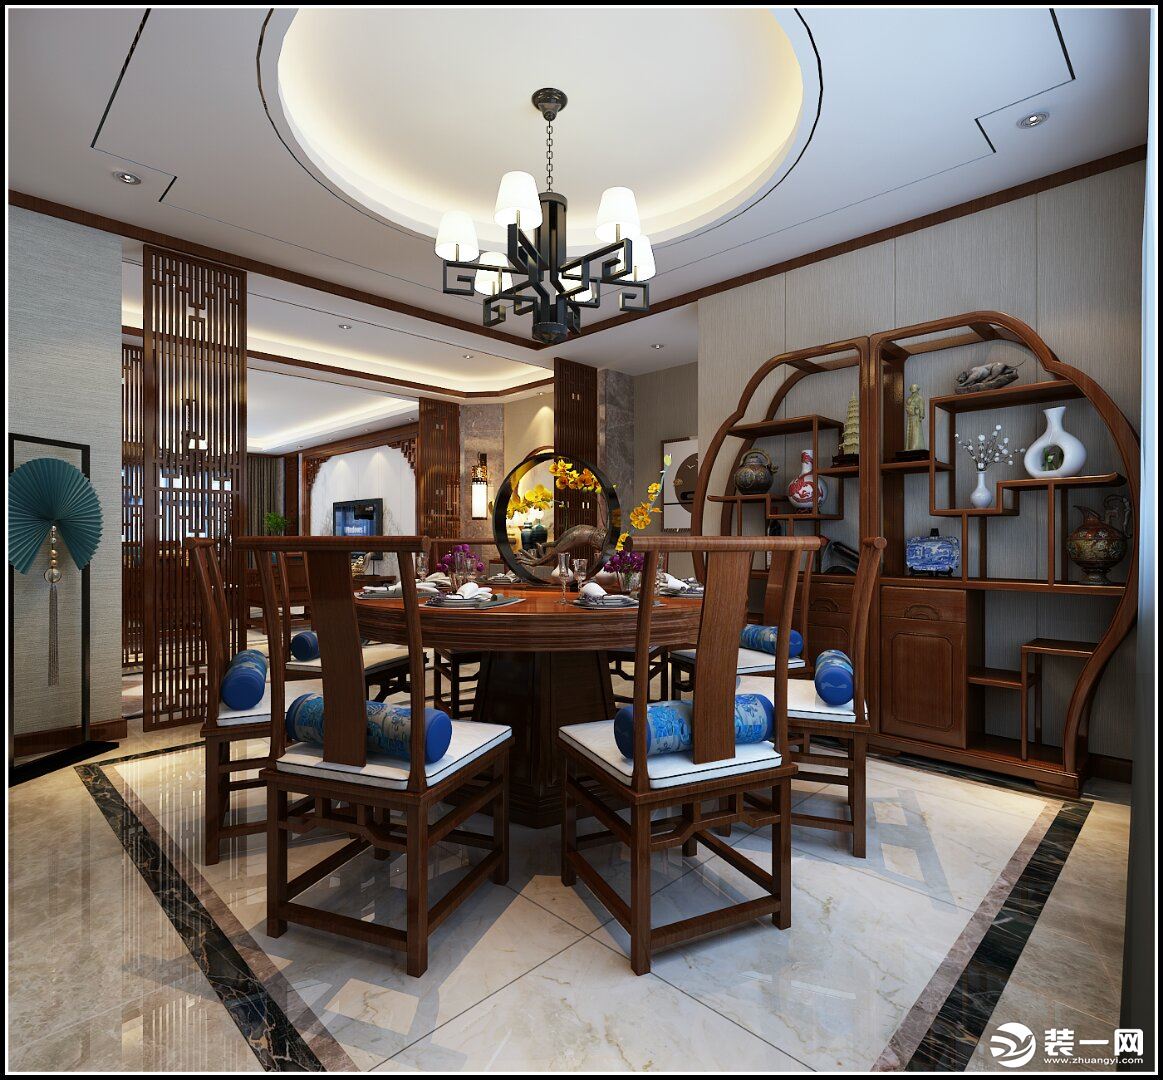 中国传统居室非常讲究空间的层次感，这种传统的审美观念在“新中式”装饰风格中，又得到了全新的阐释